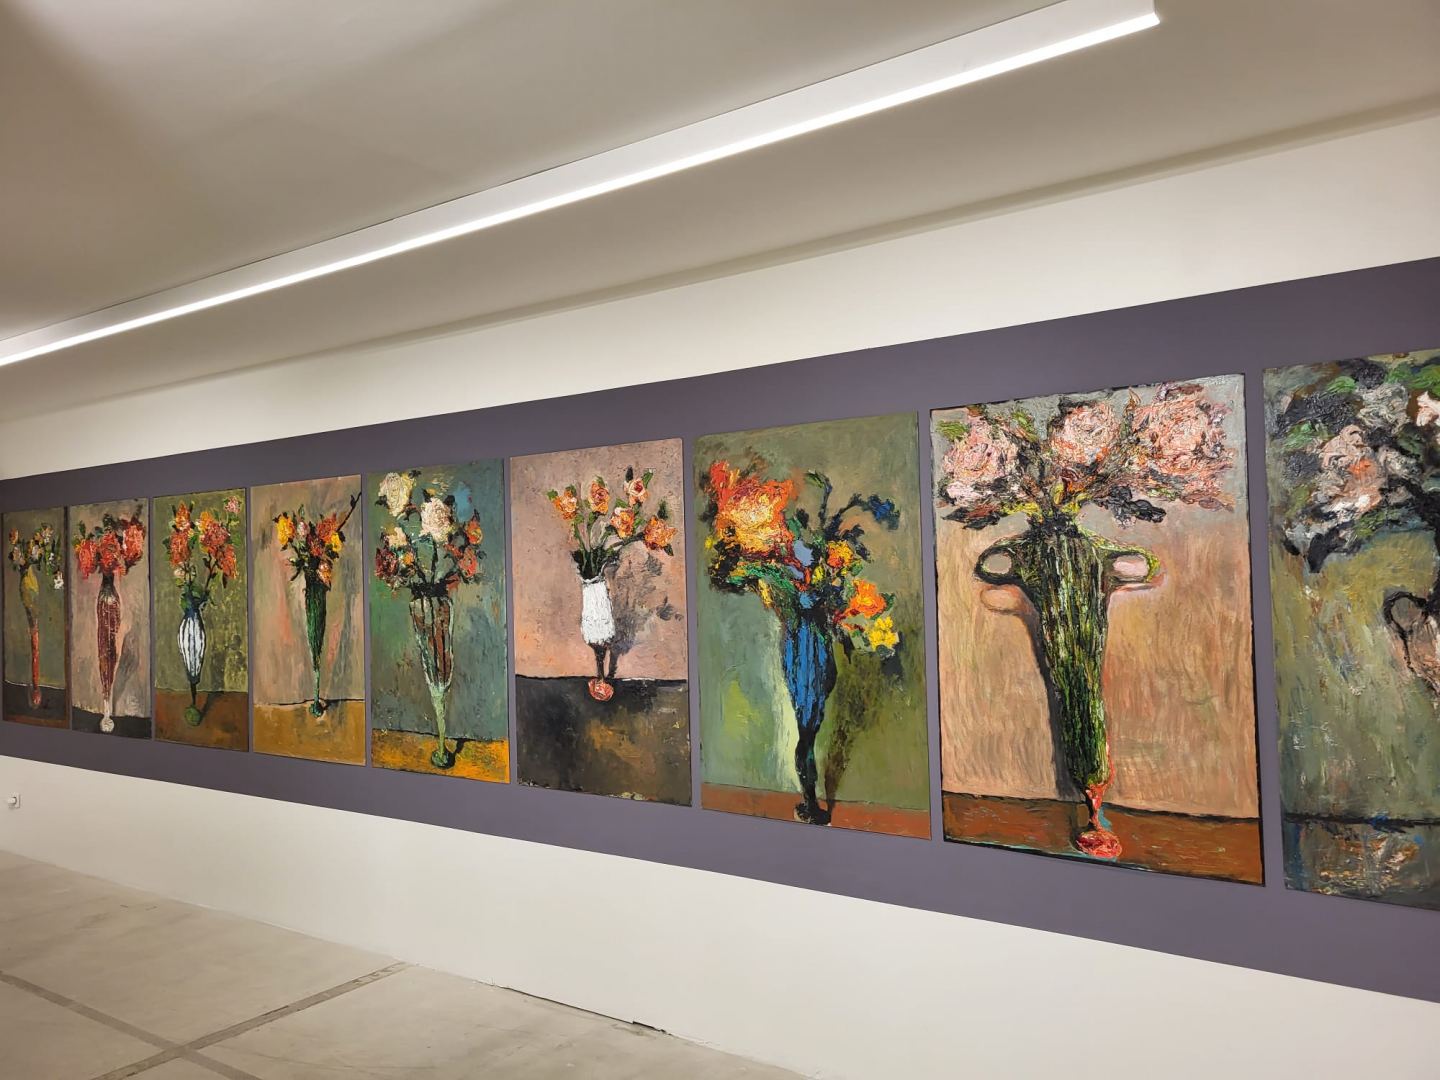 В Париже открылась выставка "Maler" азербайджанского художника Нияза Наджафова  (ФОТО)